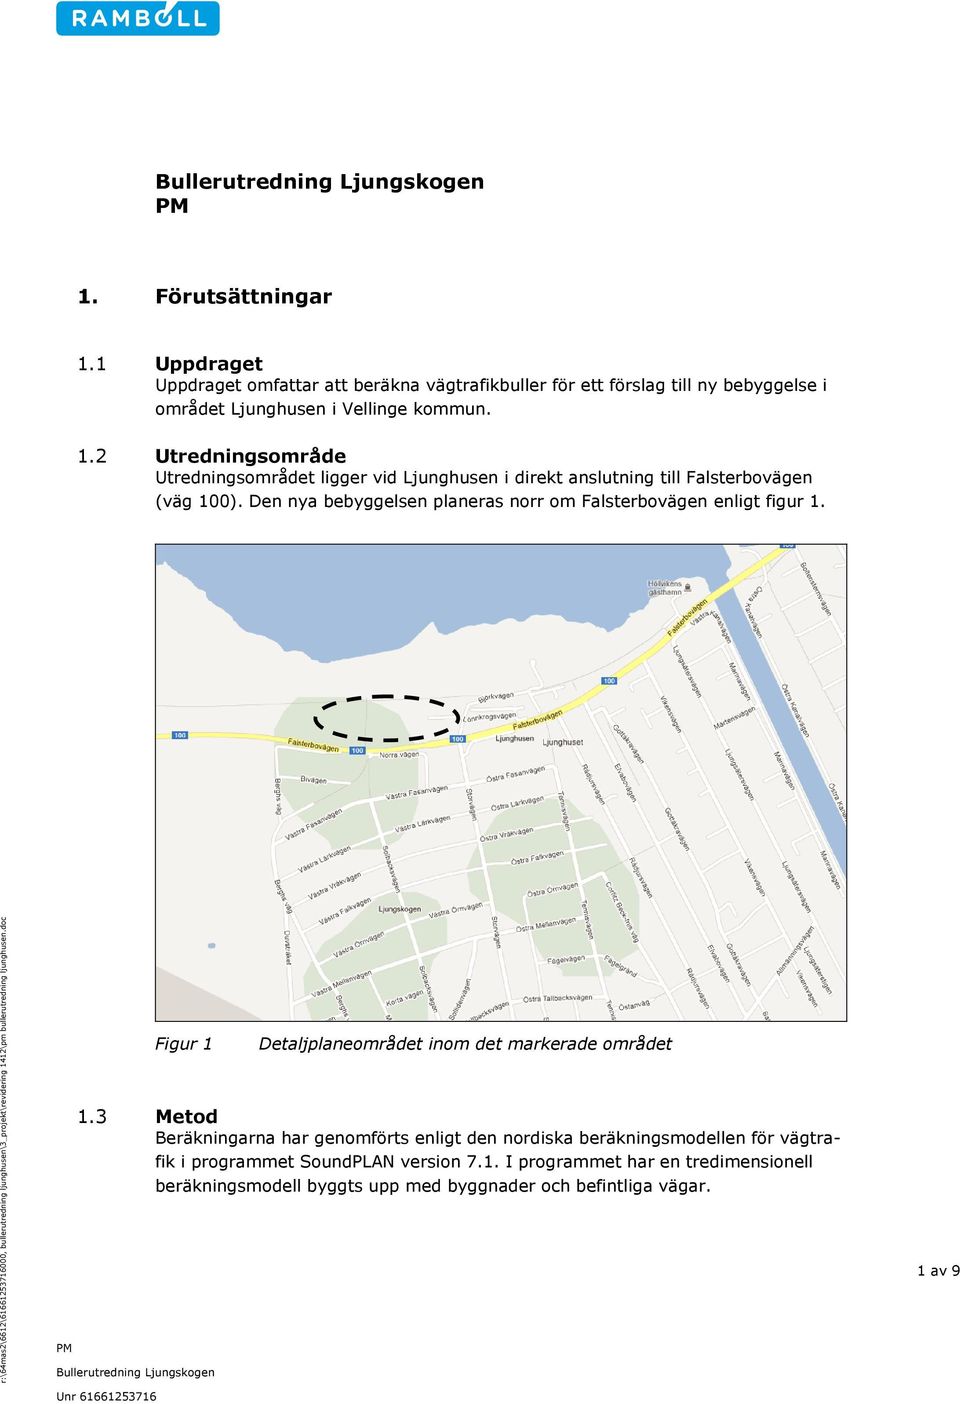 2 Utredningsområde Utredningsområdet ligger vid Ljunghusen i direkt anslutning till Falsterbovägen (väg 100). Den nya bebyggelsen planeras norr om Falsterbovägen enligt figur 1.